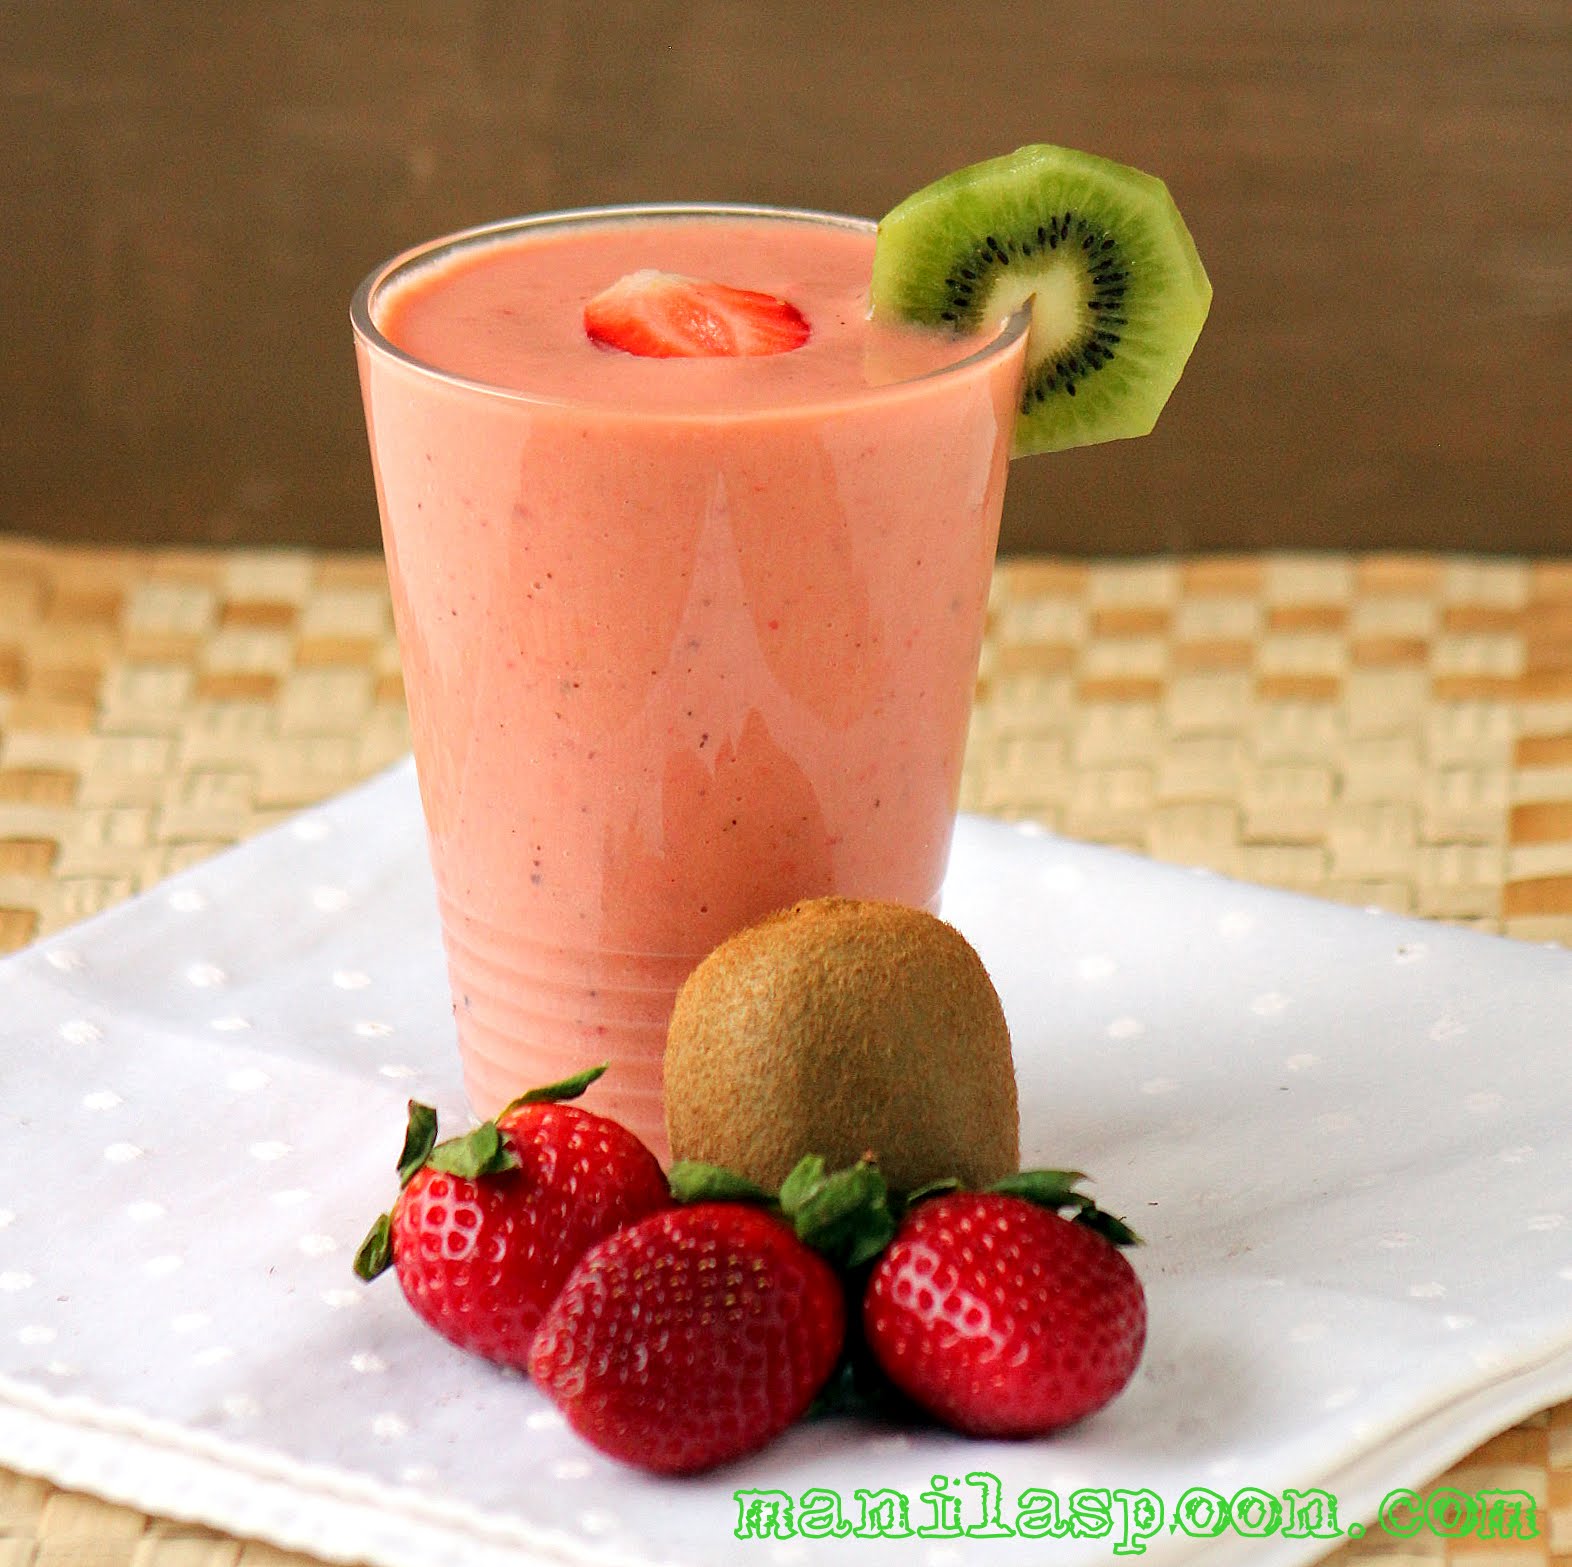 Strawberry Kiwi Smoothie - Manila Spoon